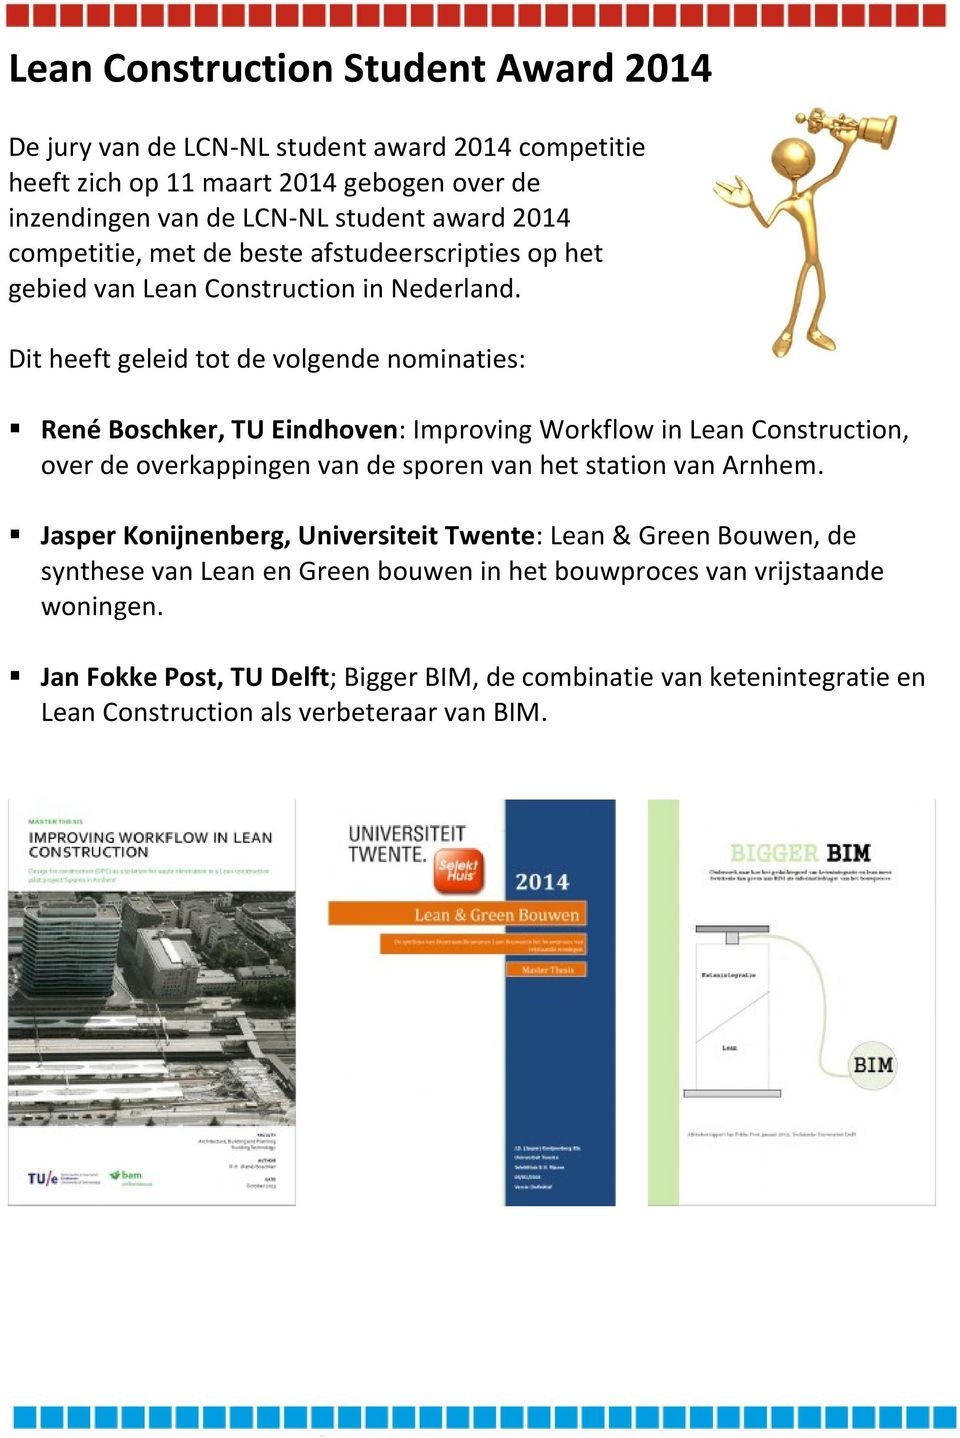 Dit heeft geleid tot de volgende nominaties: René Boschker, TU Eindhoven: Improving Workflow in Lean Construction, over de overkappingen van de sporen van het station van Arnhem.